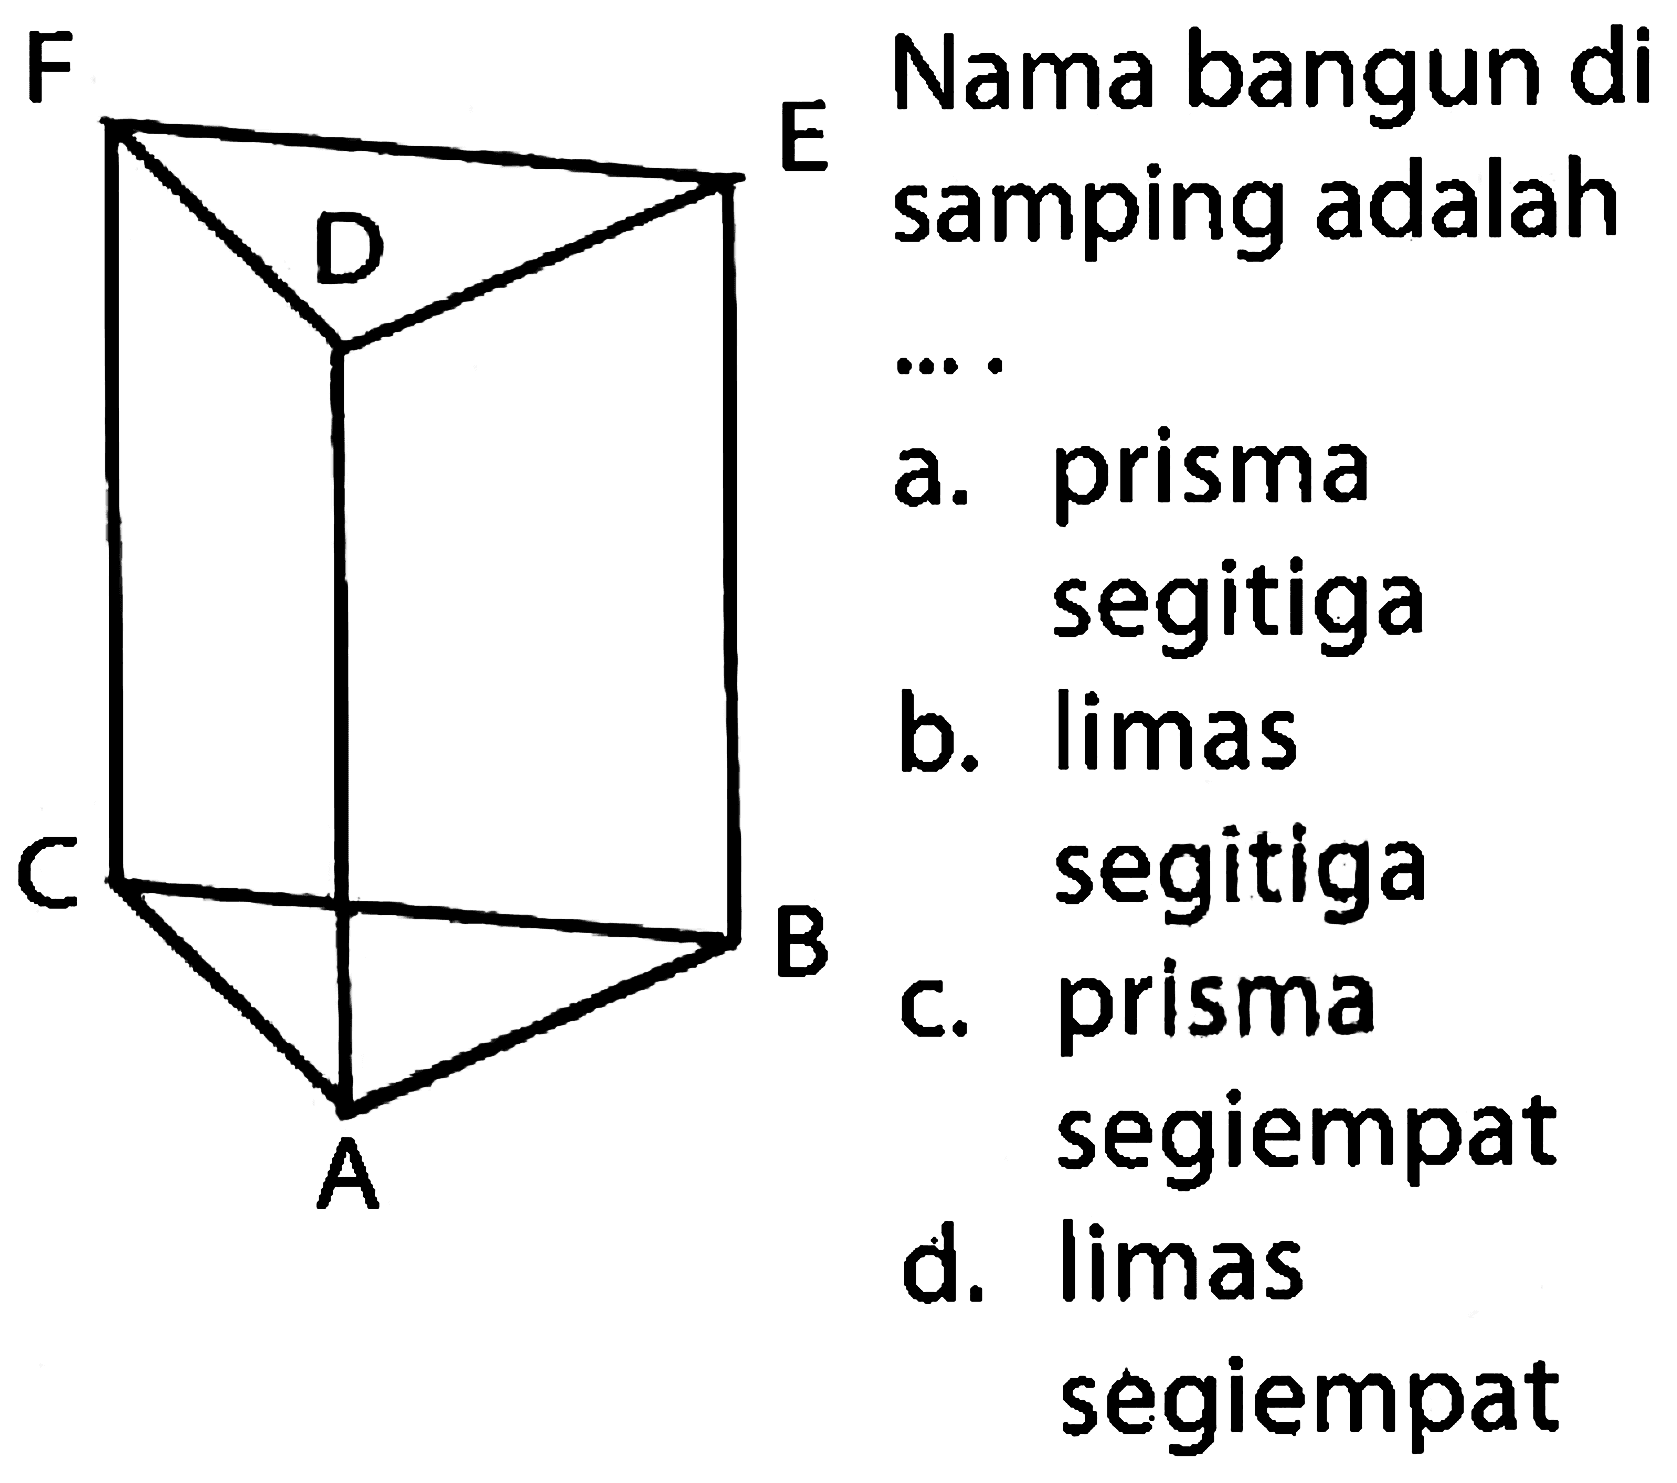 Nama bangun di samping adalah
... prisma
a. prisma
b. limas
segitiga
c. prisma
segiempat
d. limas segiempat